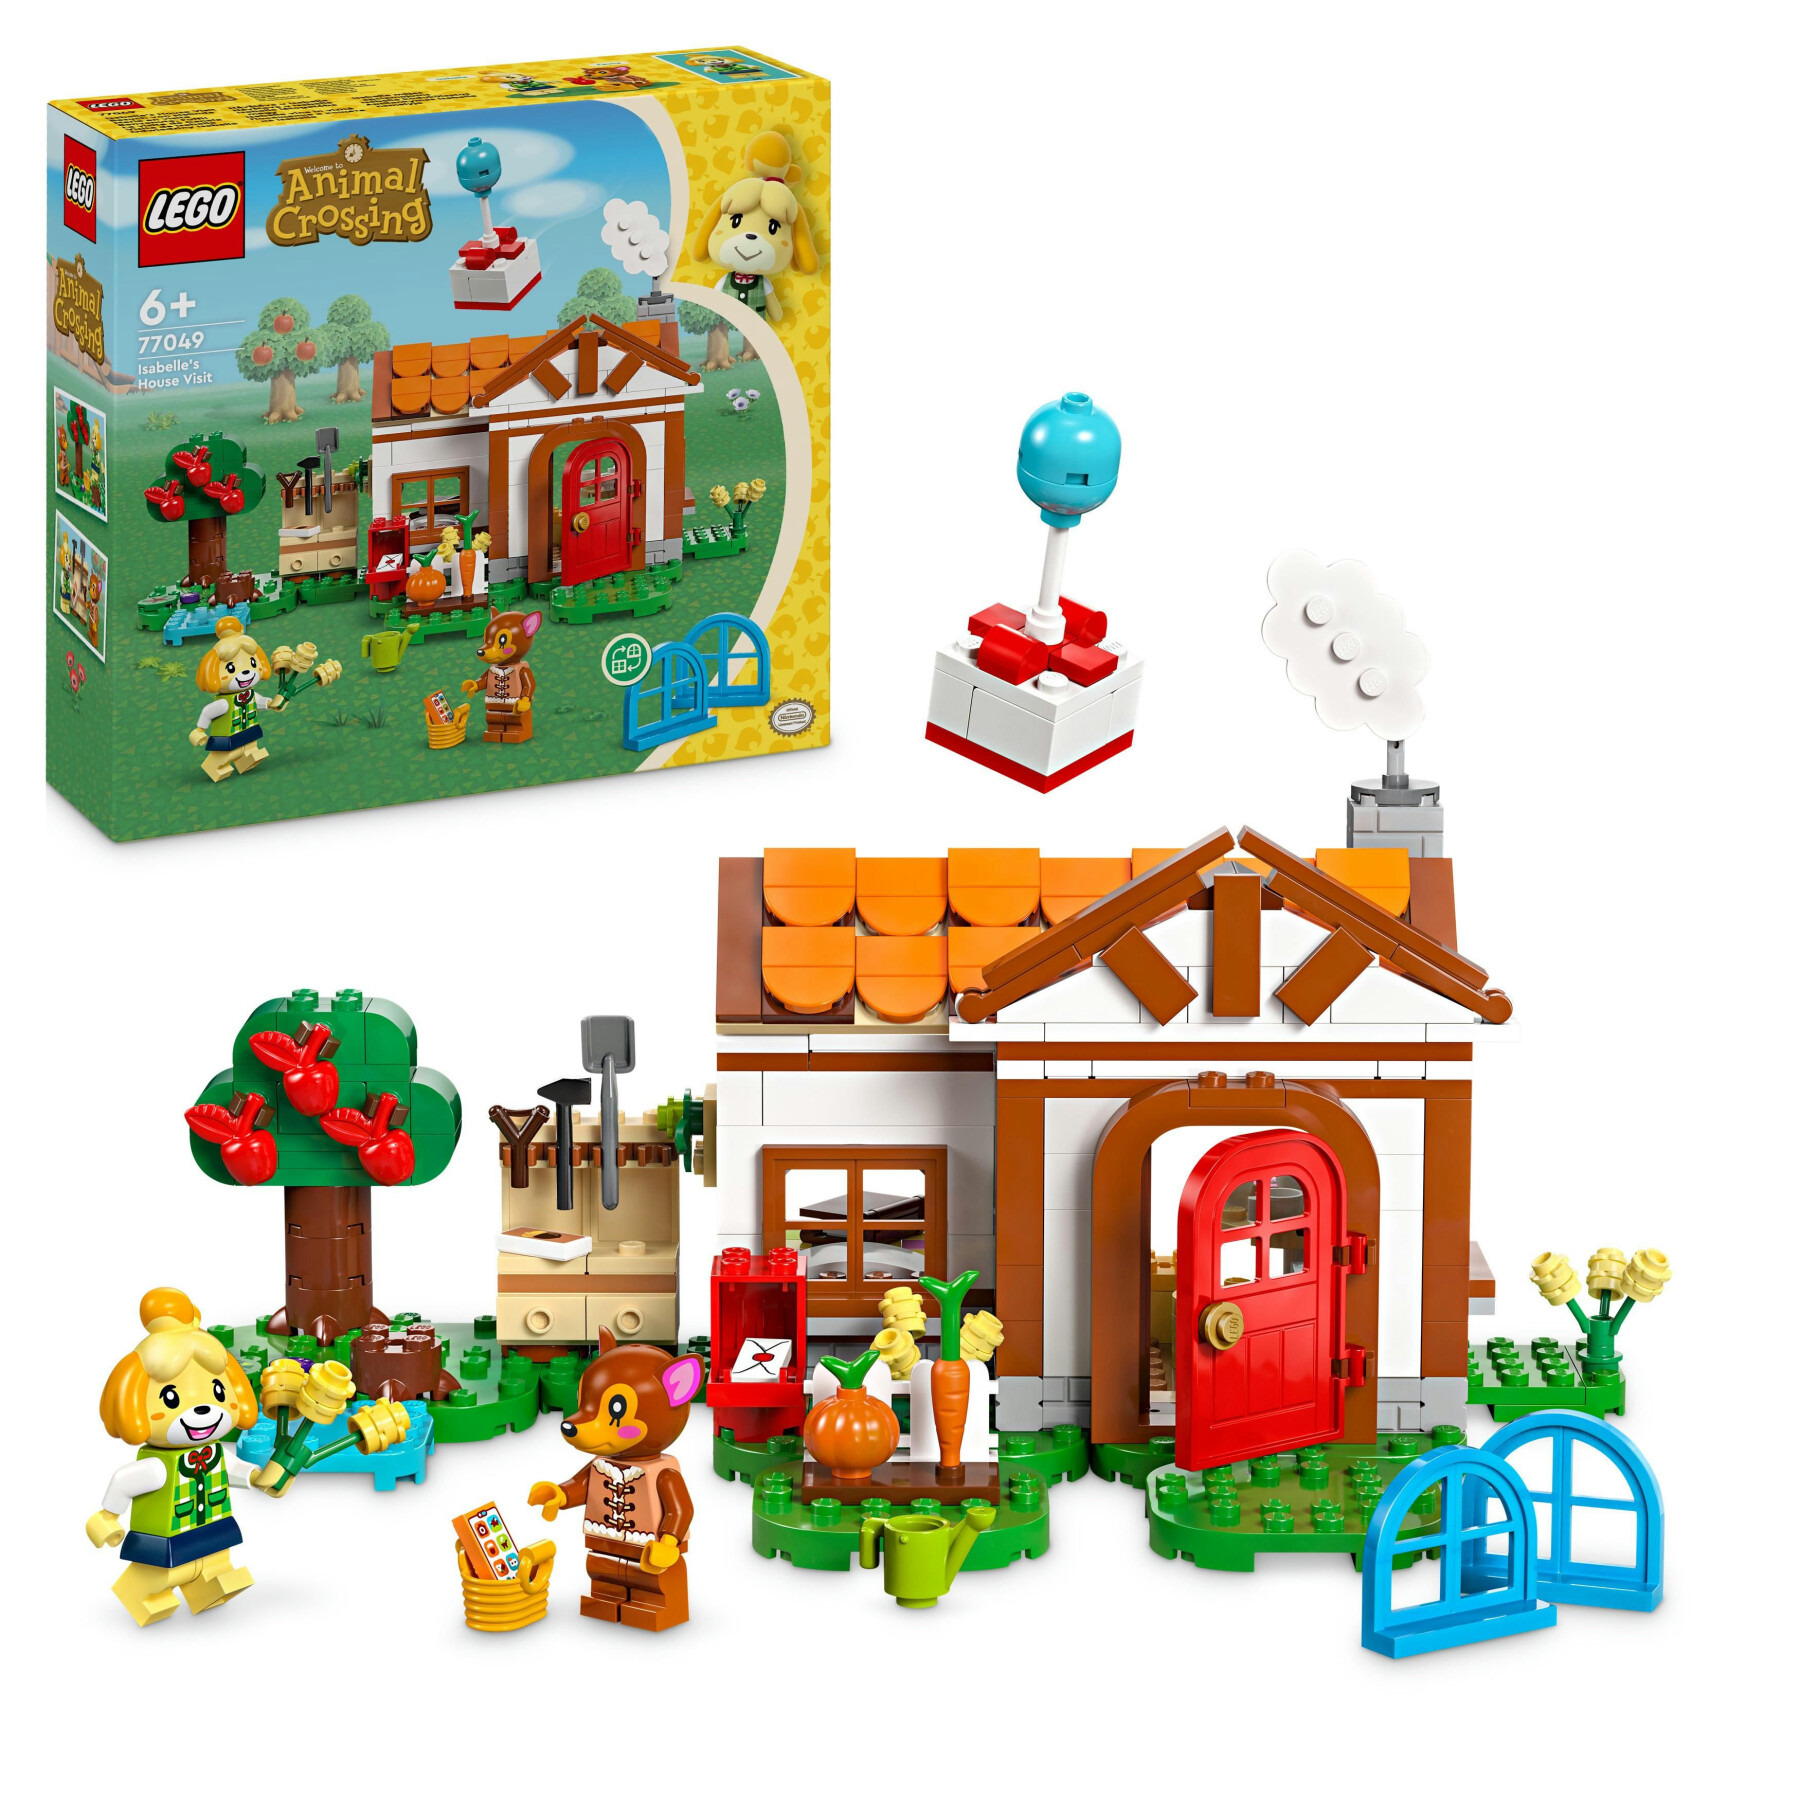 Lego animal crossing 77049 benvenuta, fuffi! casa giocattolo da costruire, giochi creativi per bambini 6+ con 2 personaggi - Lego Animal Crossing